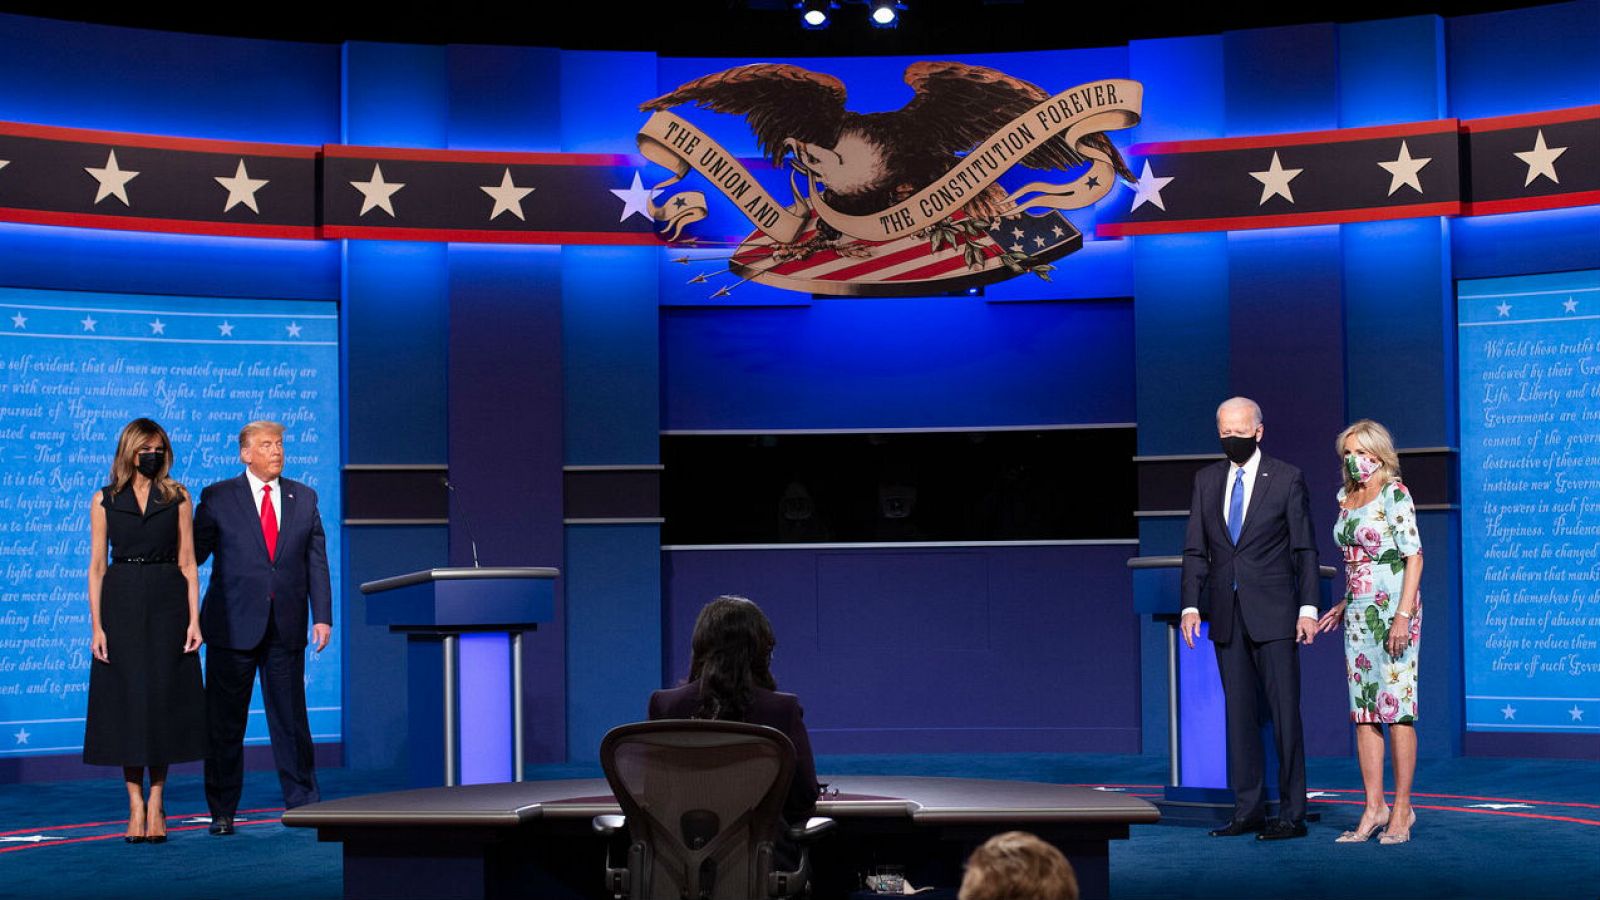 Trump durante el debate: "Soy la persona menos racista de esta sala"